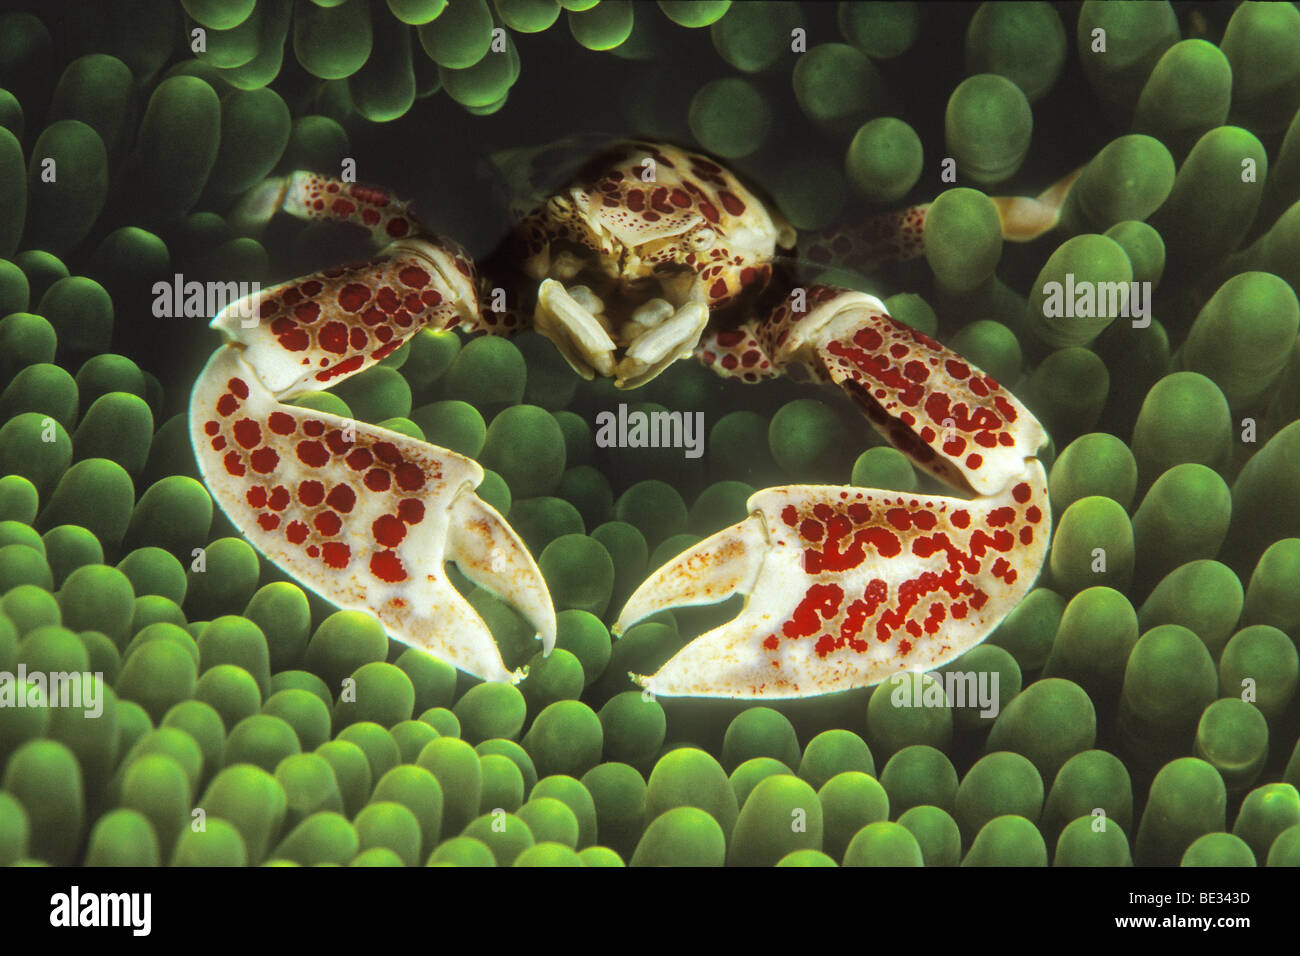 Anemone Porcelain Crab, Neopetrolisthes oshimai, Bunaken, Sulawesi, Indonesia Stock Photo